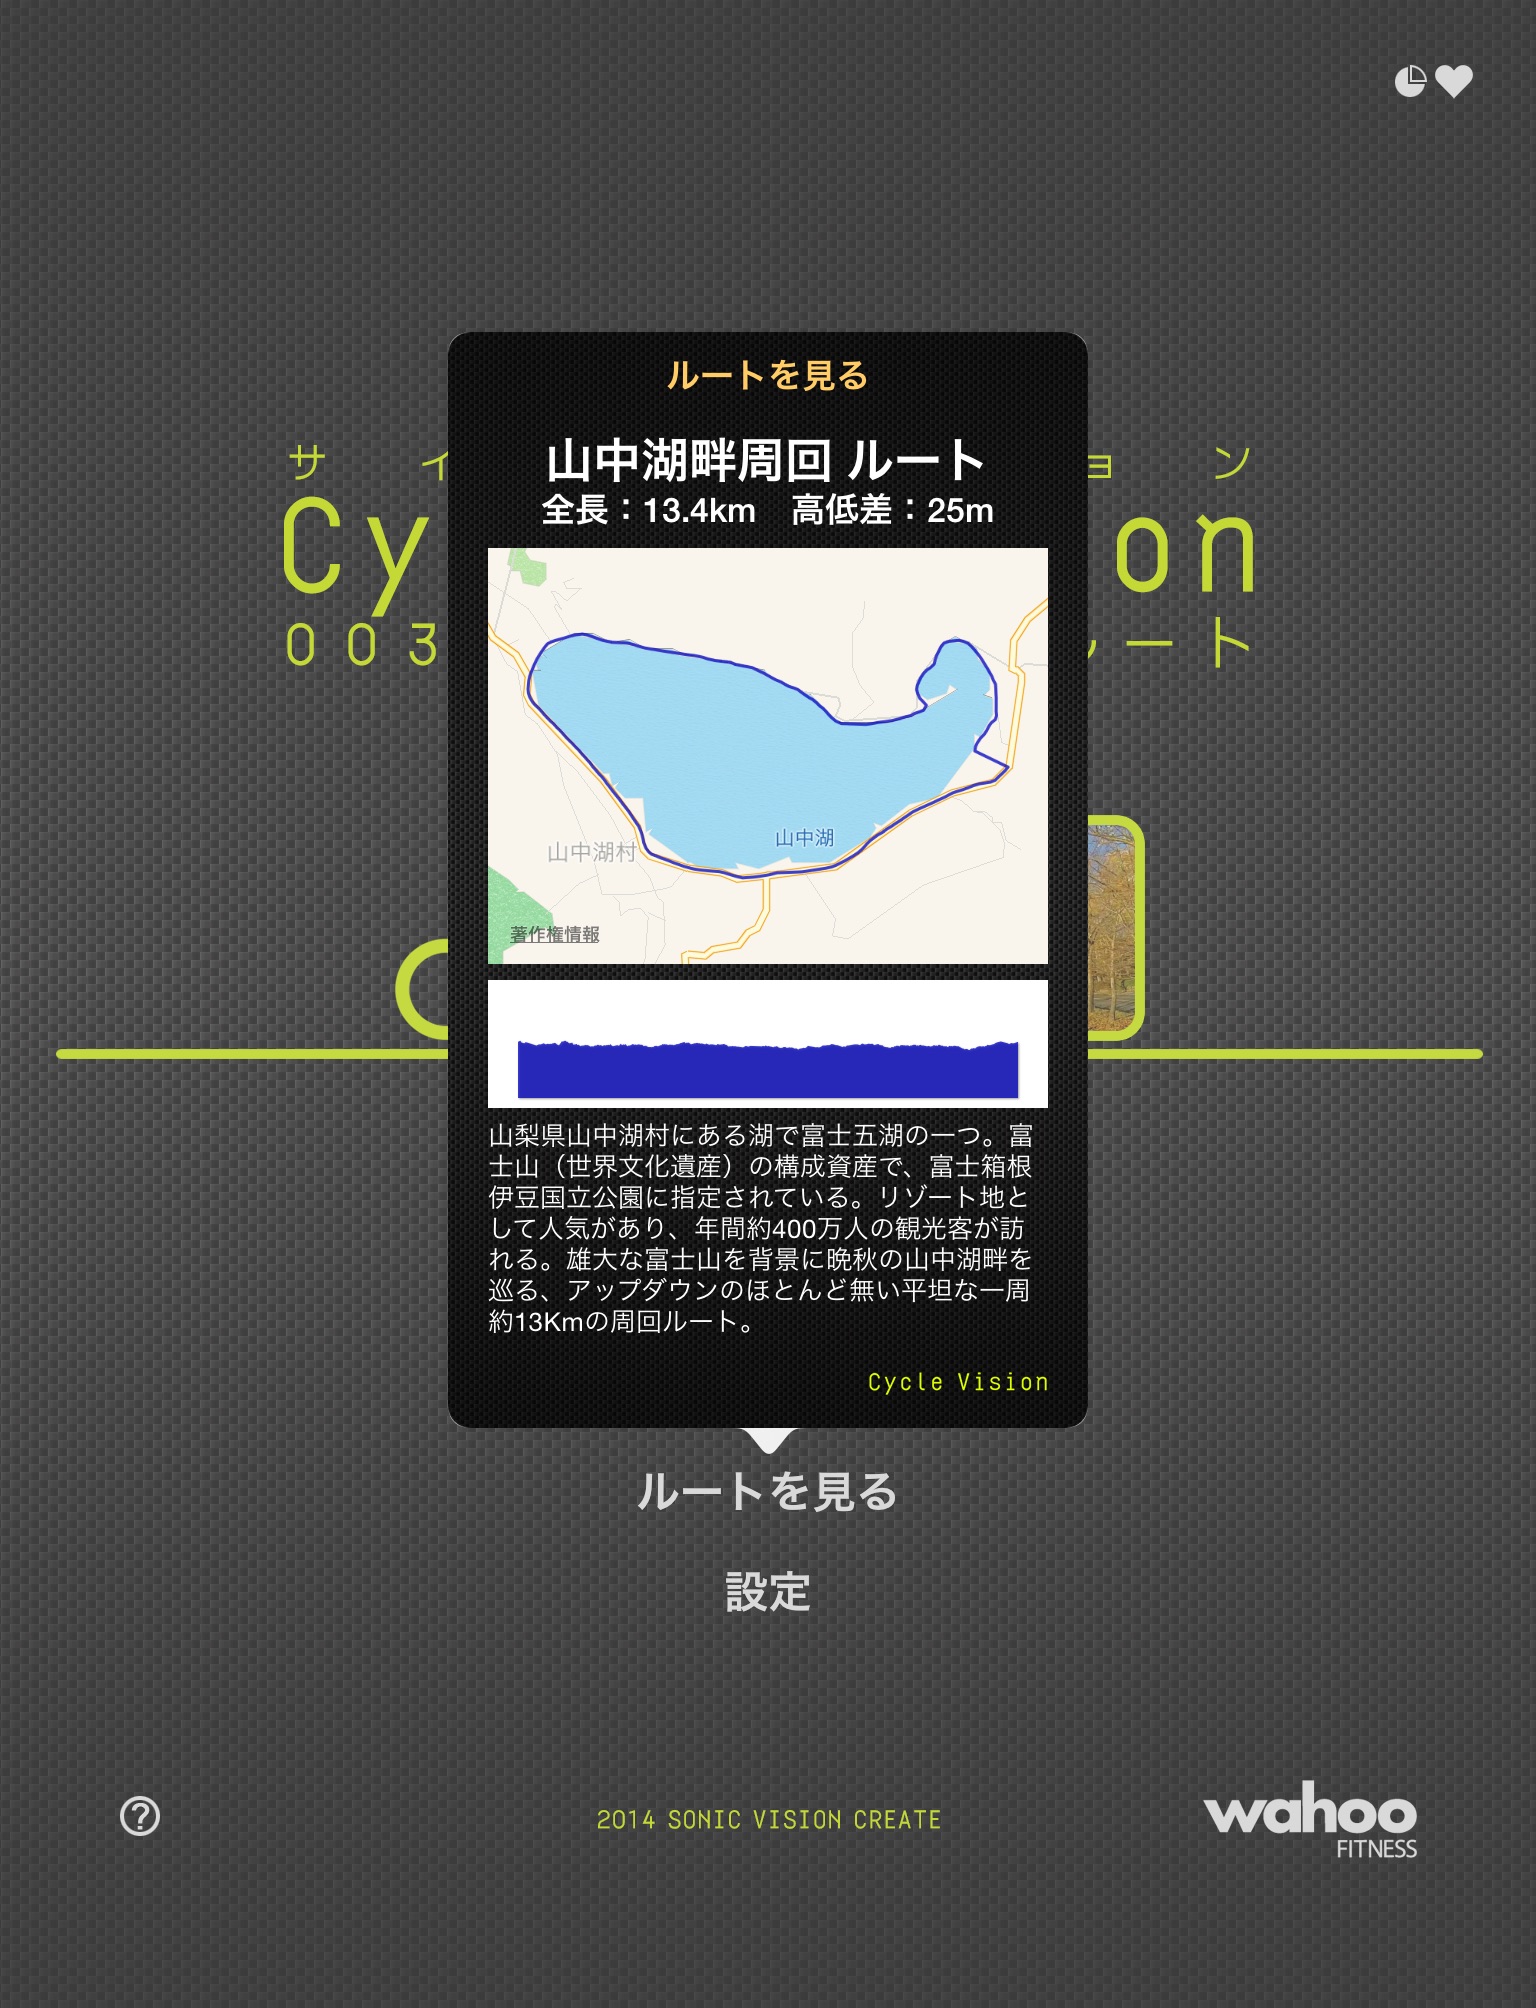 Cycle Vision 003: Yamanakako screenshot 3